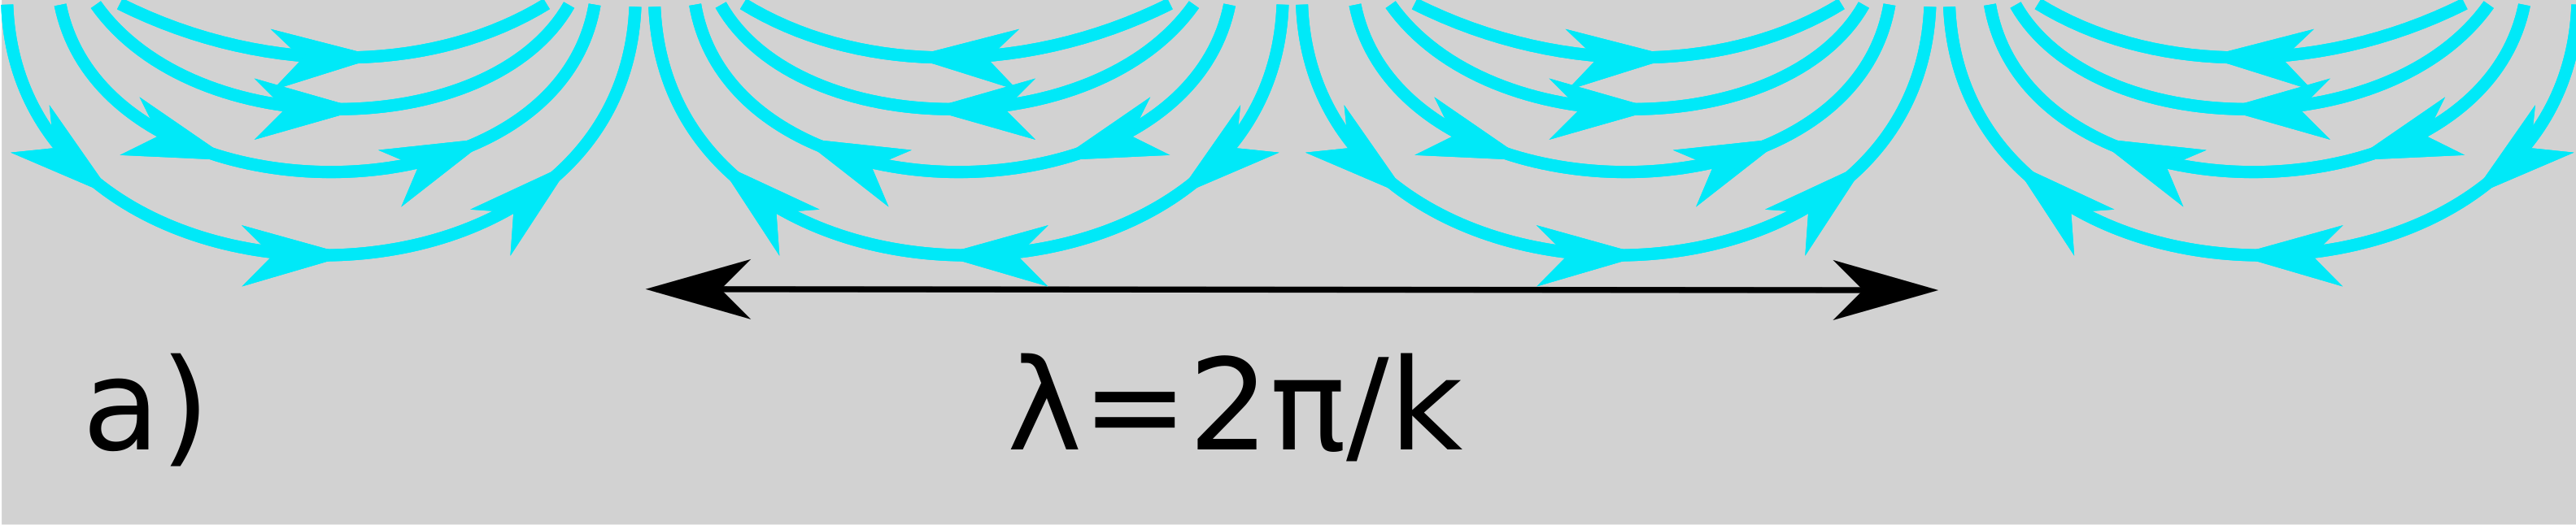 Rysunek 1.5: Ideowy schemat rozkładu gęstości ładunku w fali plazmowej oraz pola elektrycznego przez nią wytwarzanego w przypadkach: a) 2DEG nieprzykrytego bramką i b) 2DEG z bramką (ekranowanego).